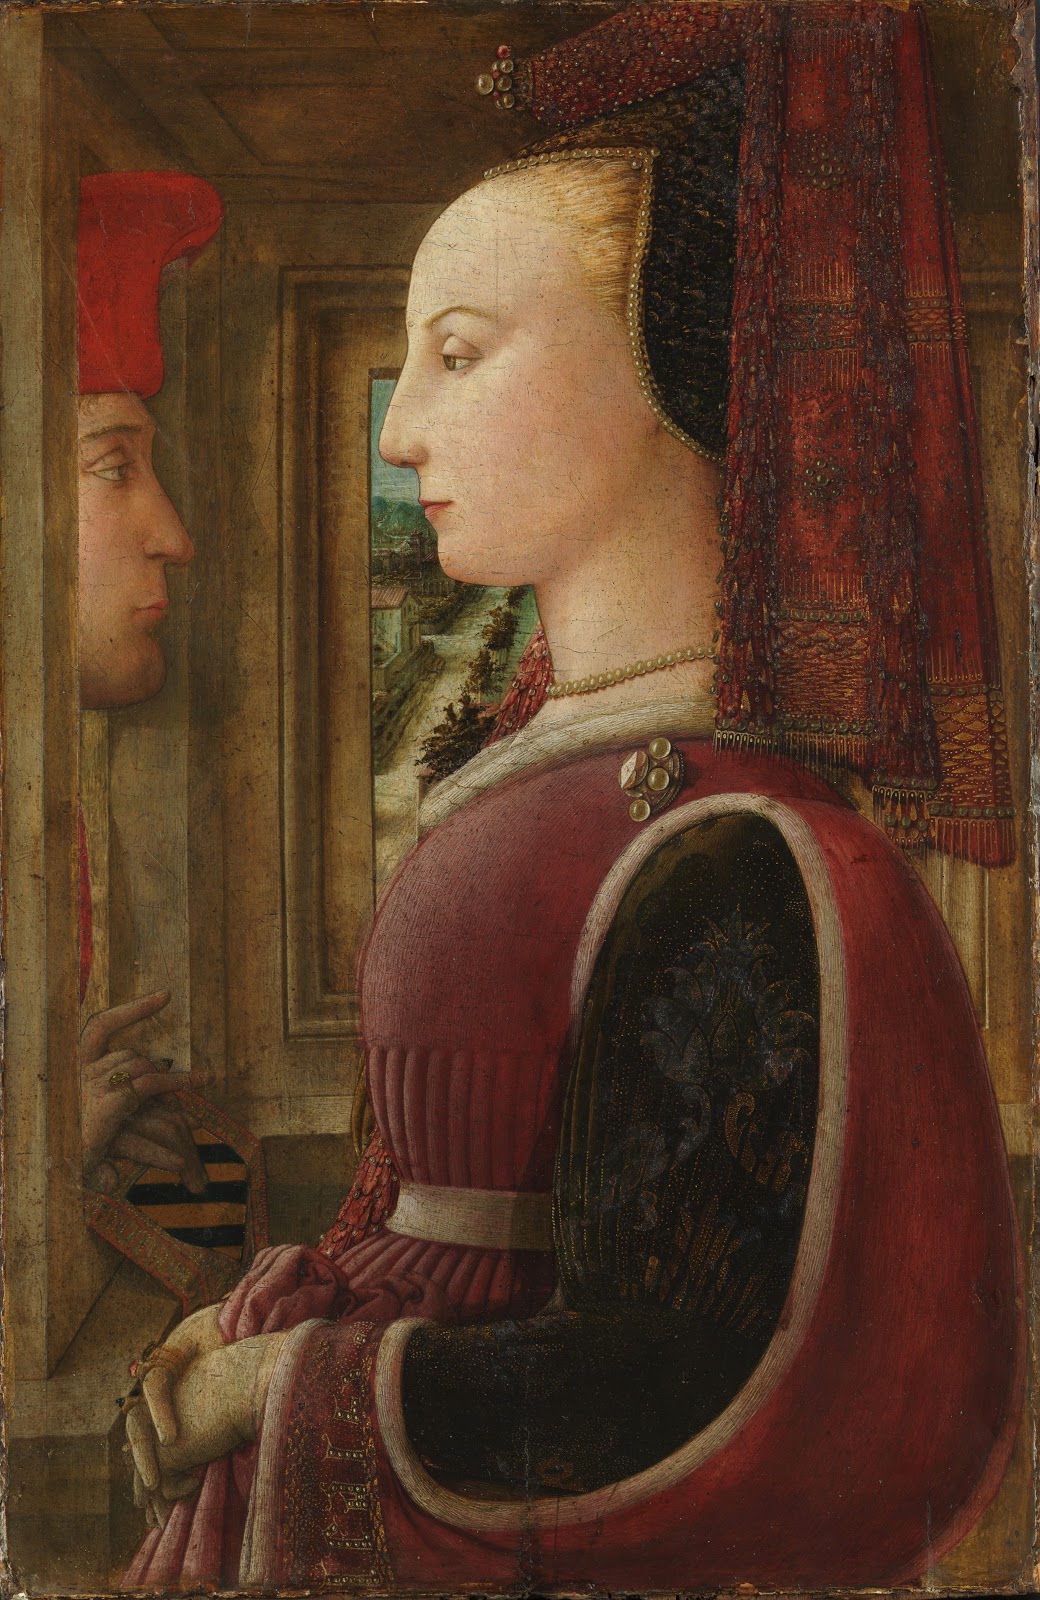 Filippino+Lippi-1457-1504 (137).jpg